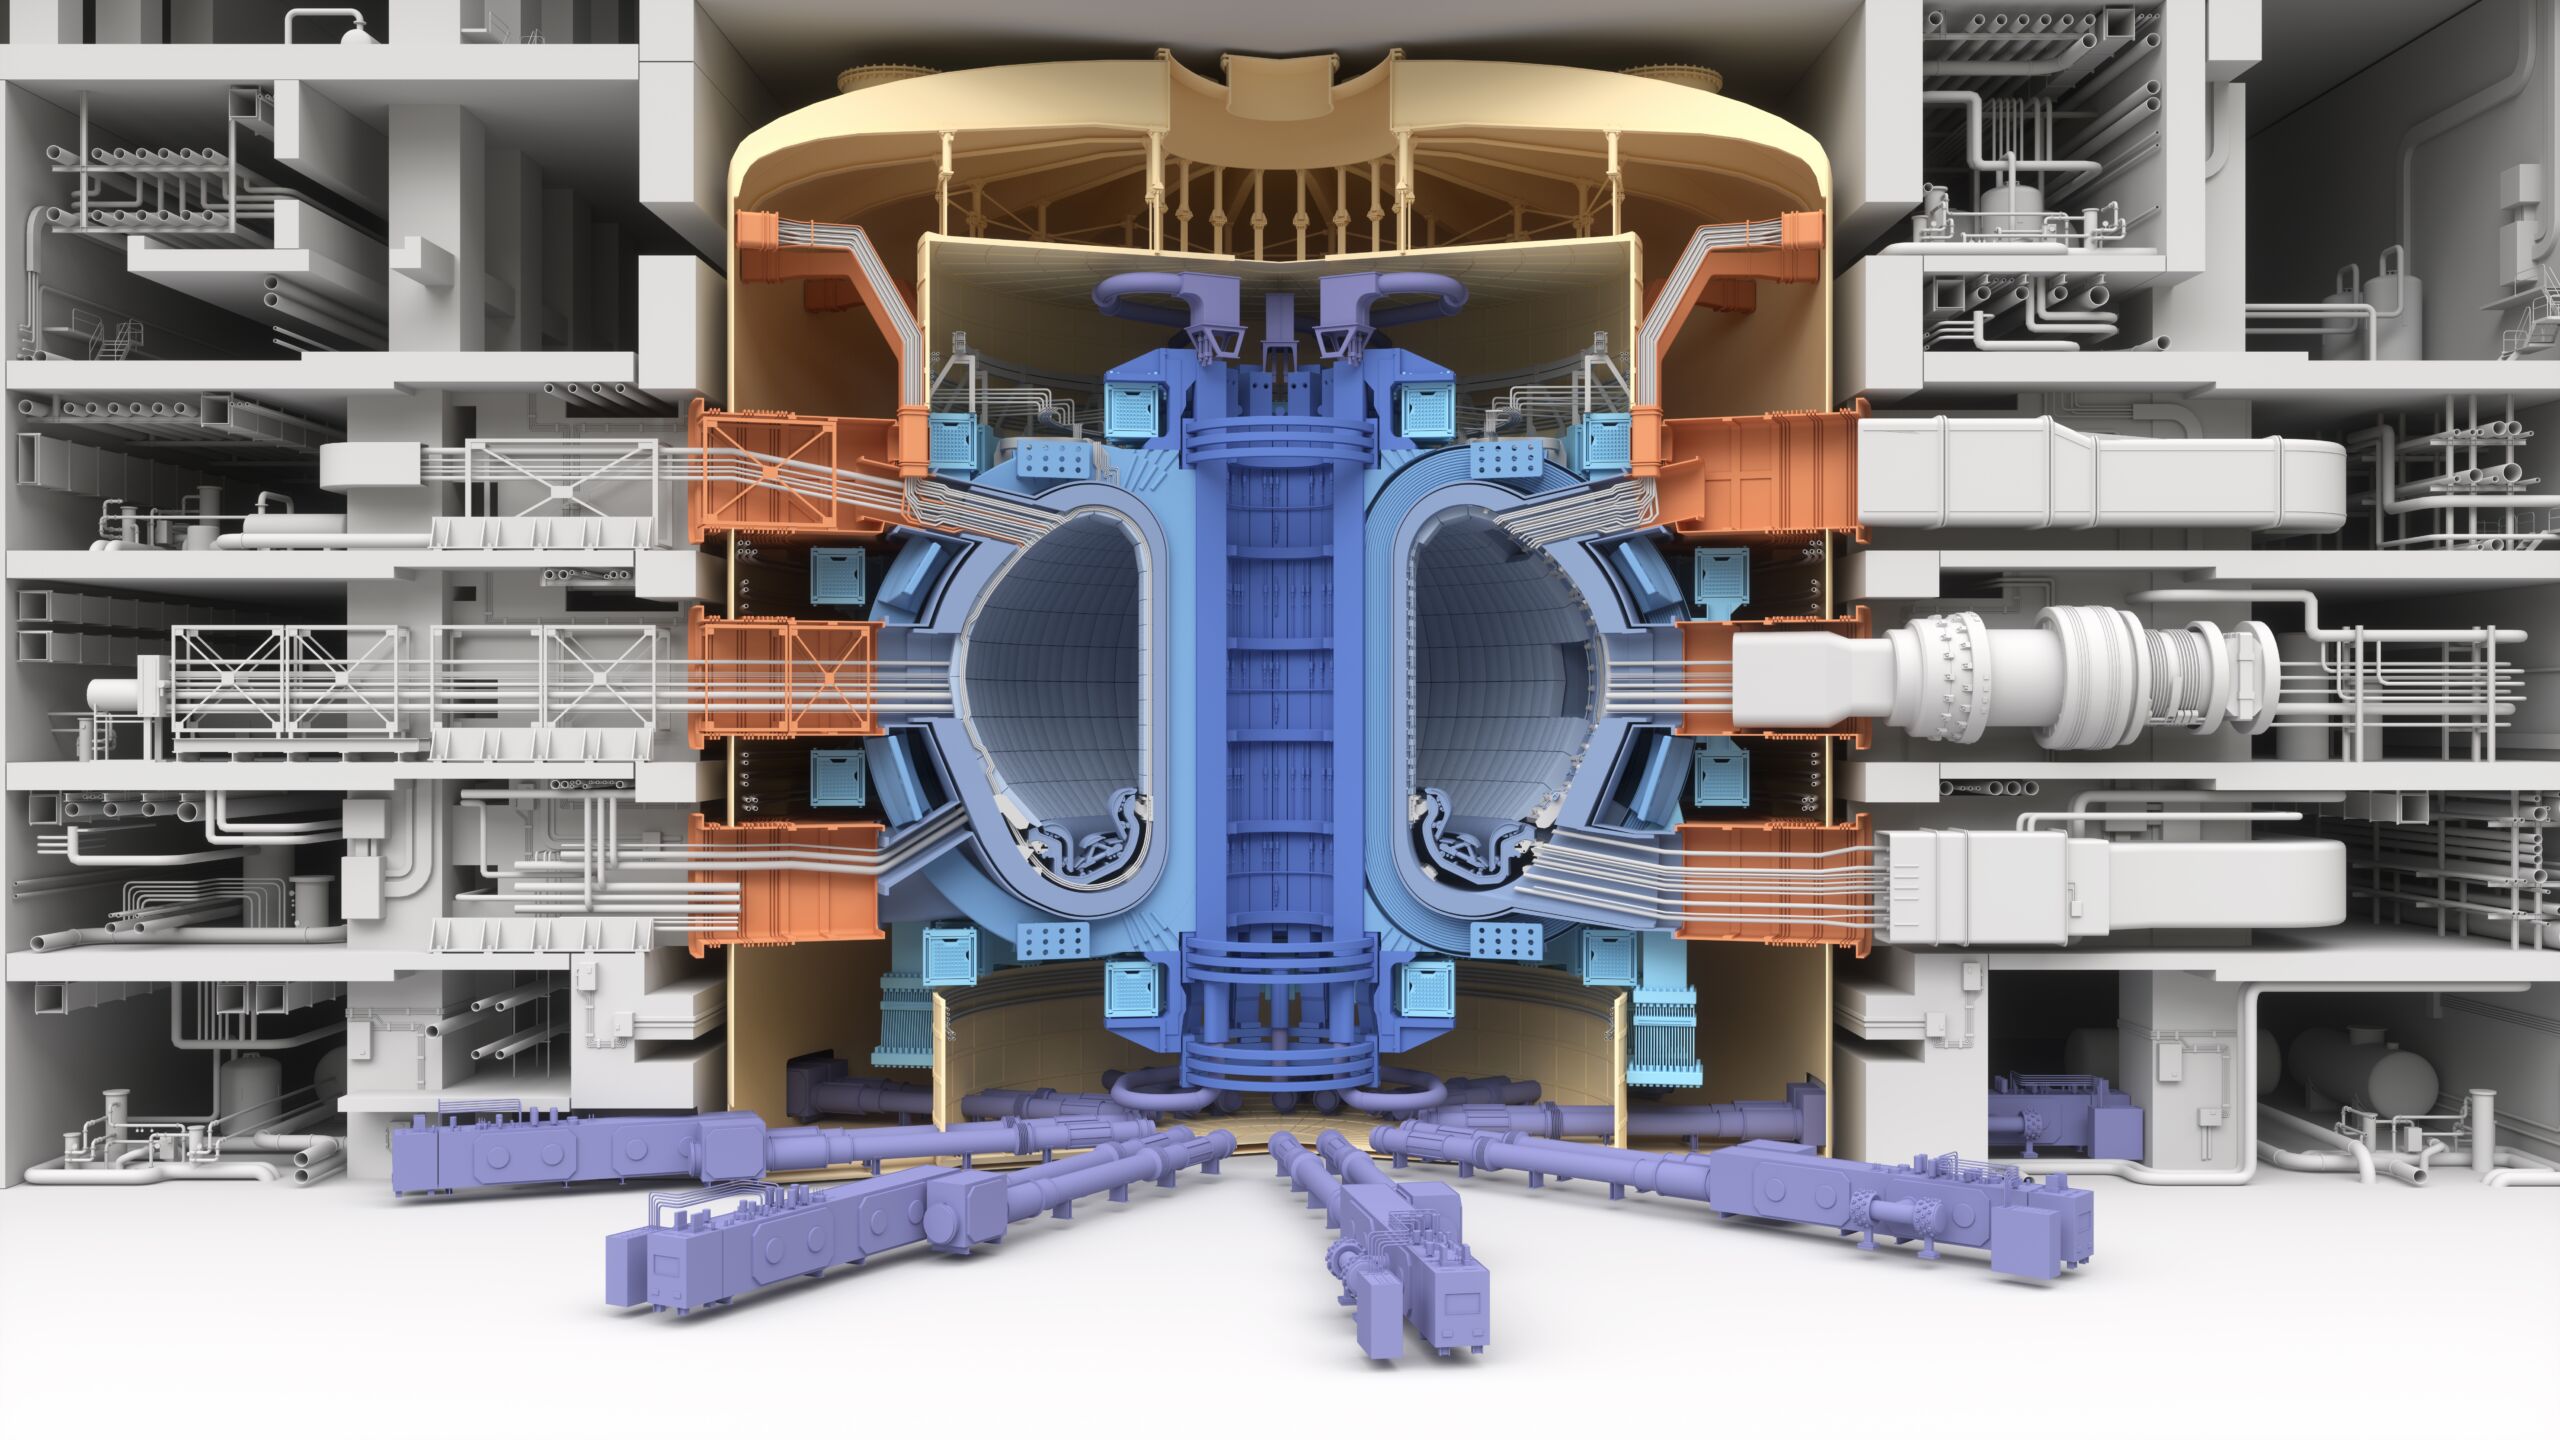 Reaktor fuzyjny, kt贸ry jest szans膮 na czyst膮 energi臋, badany jest w ramach projektu ITER